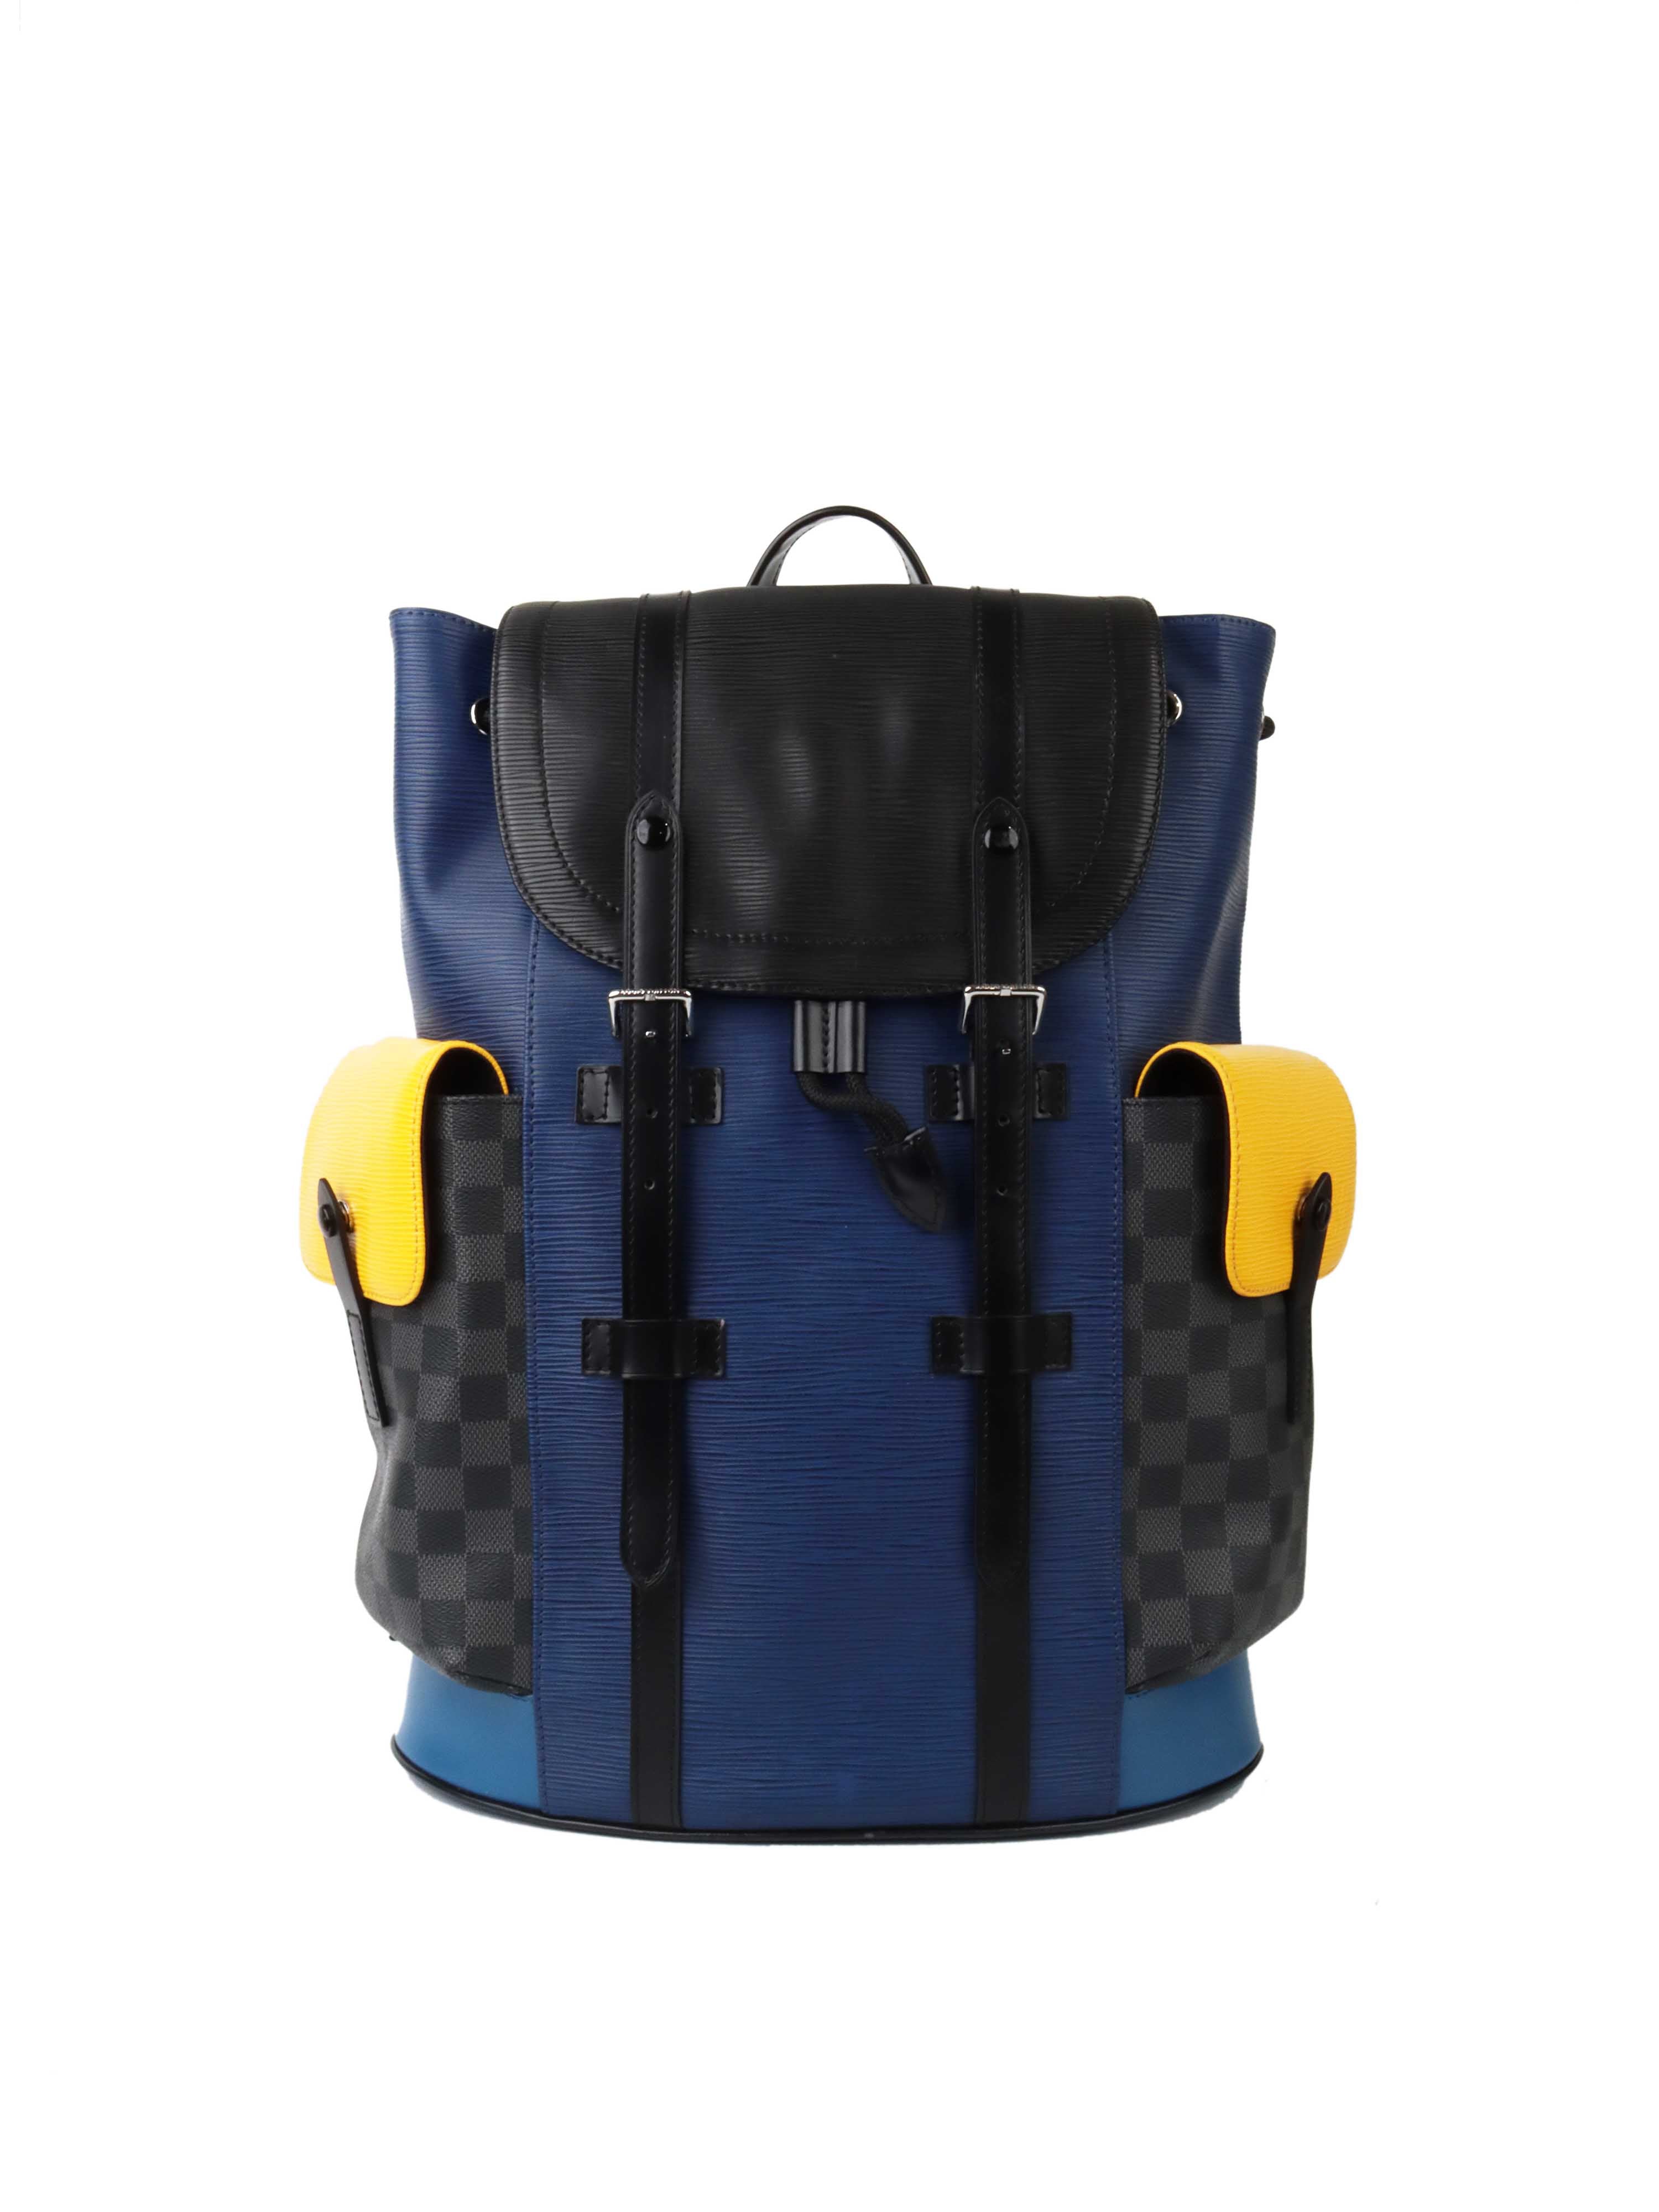 lv christopher backpack blue